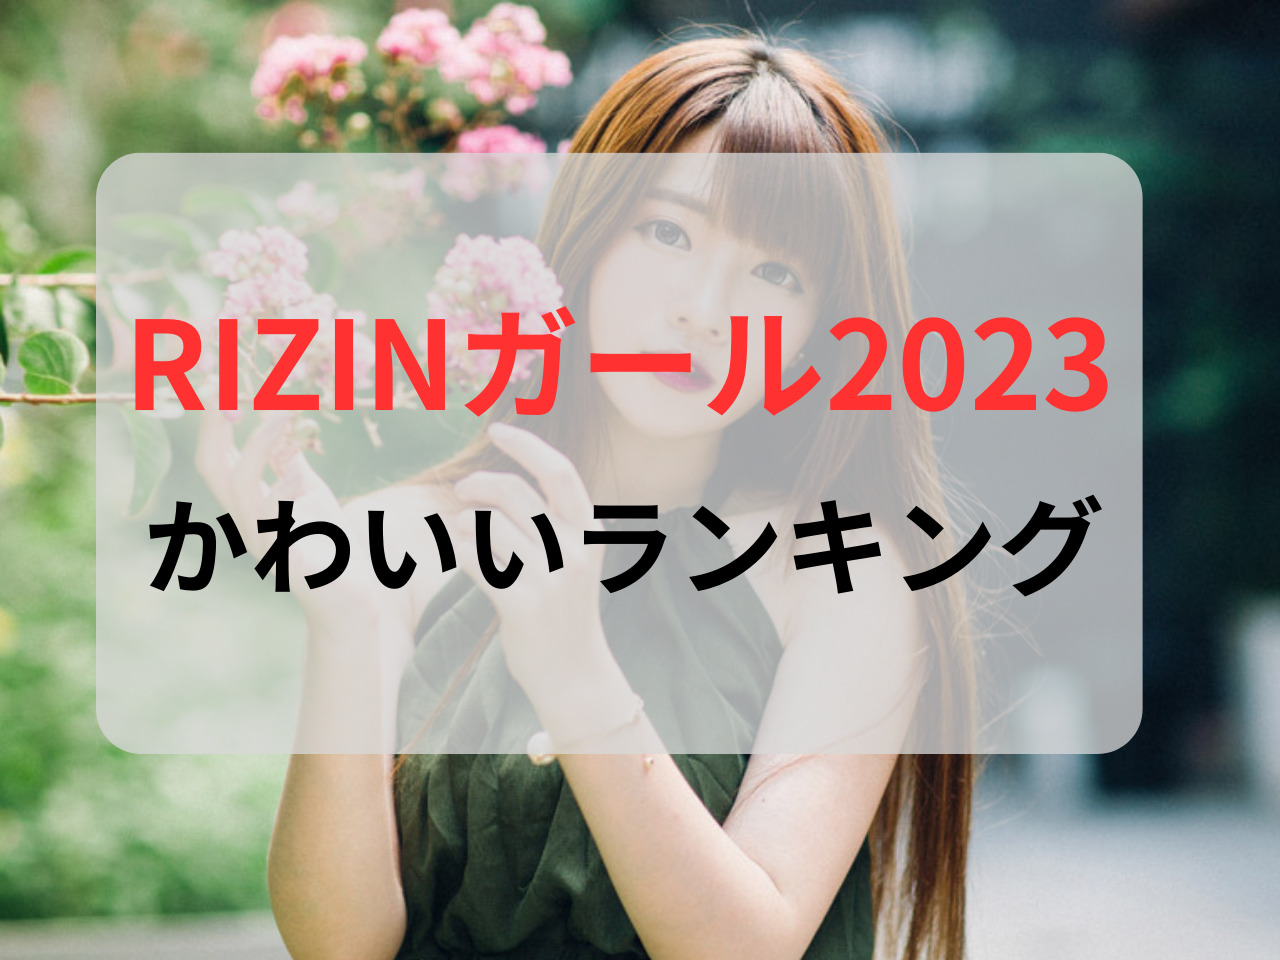 rizinガール 2023かわいいランキング